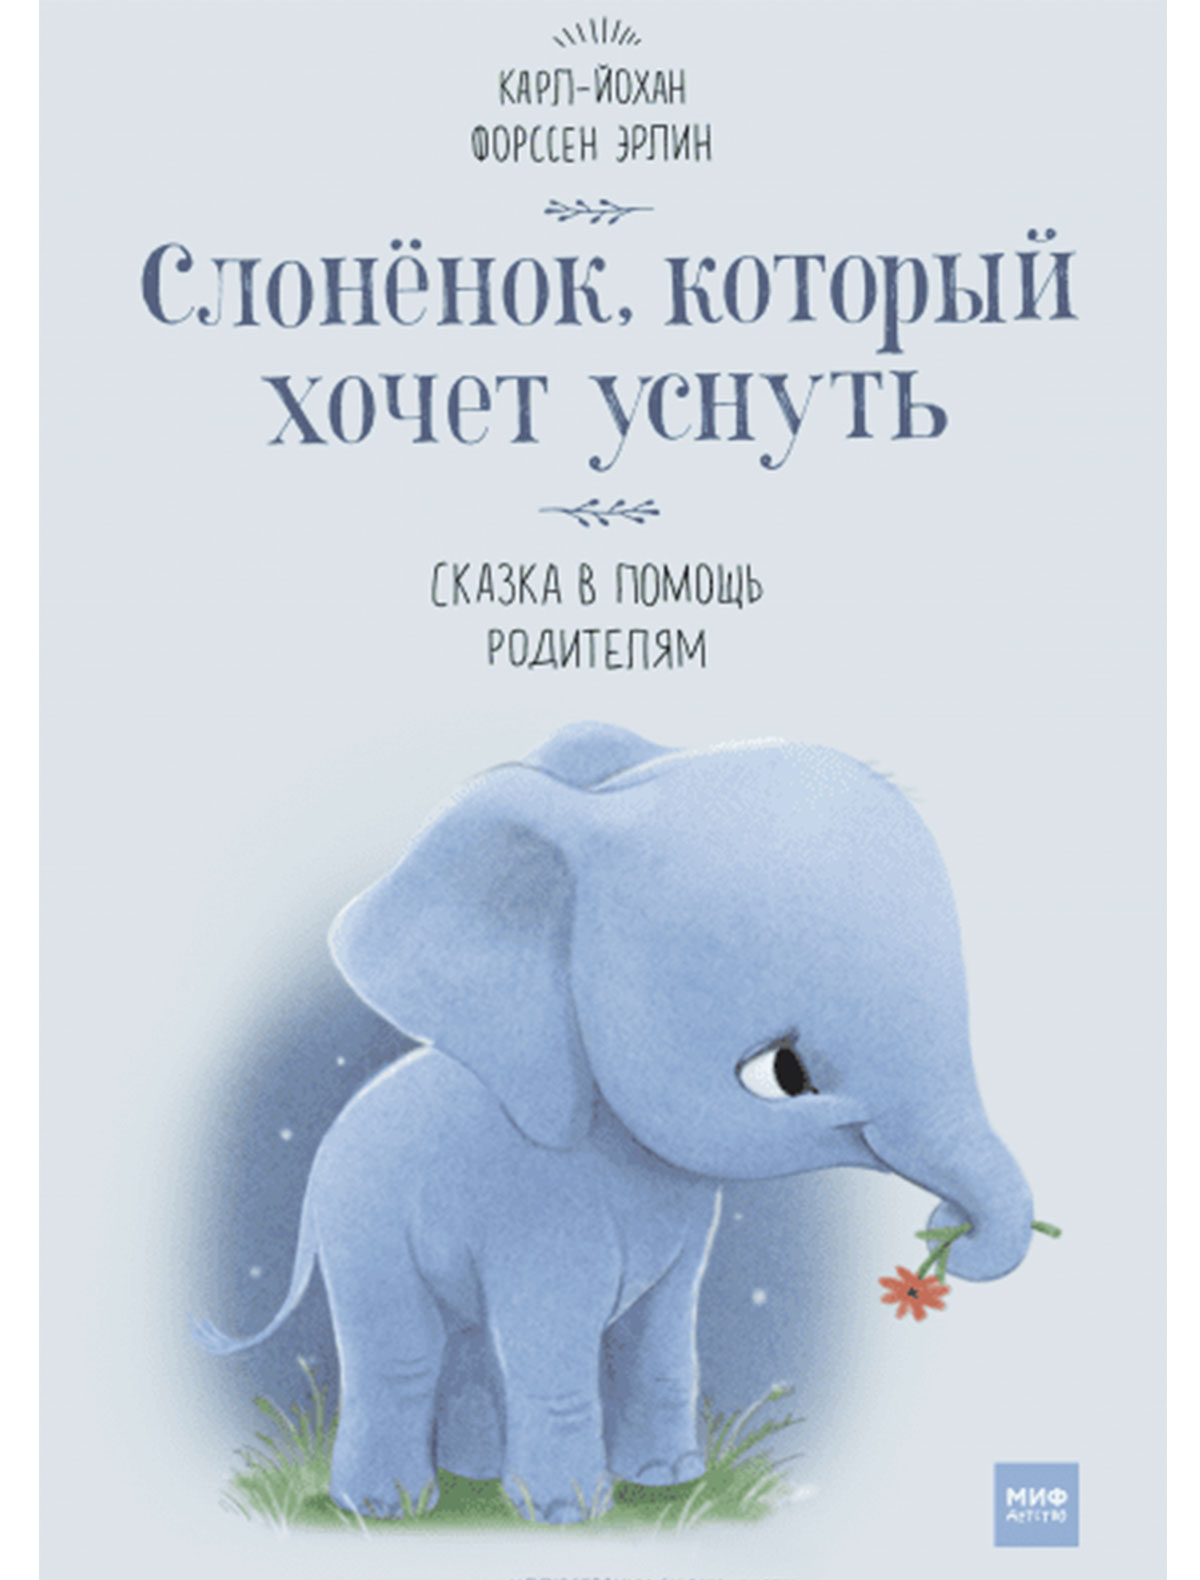 Книга МИФ книга слоненок который хочет уснуть